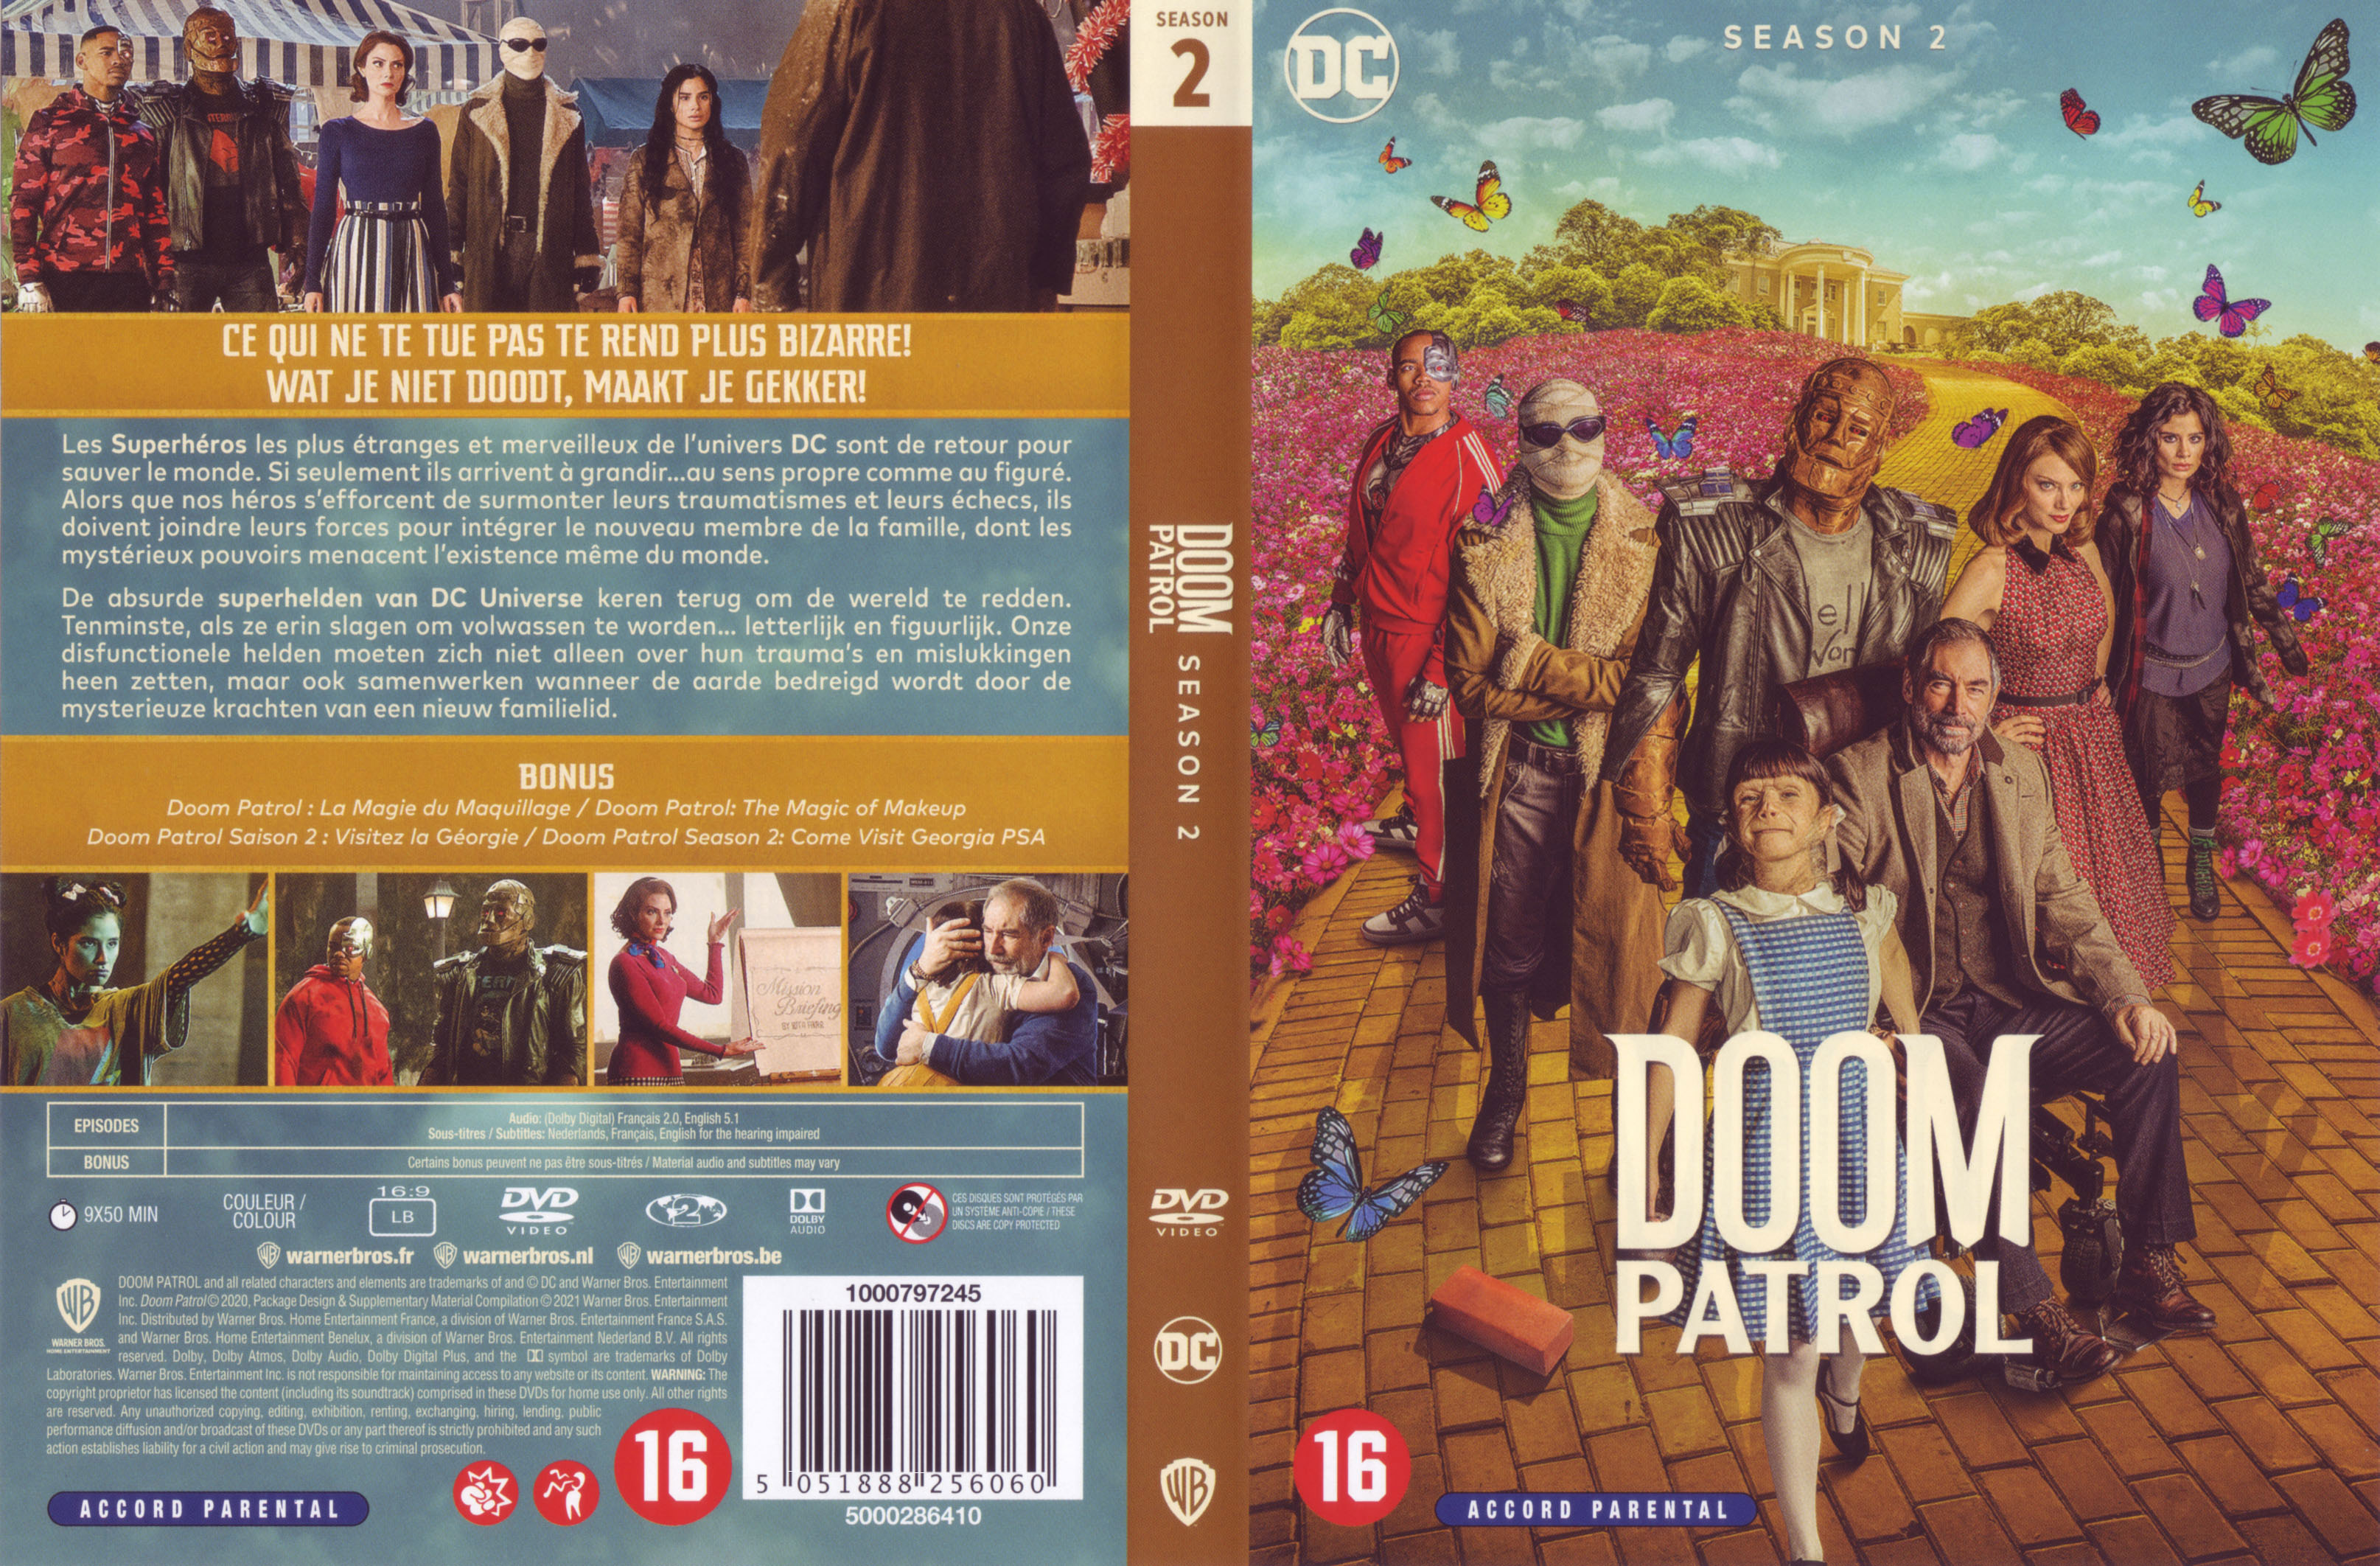 Jaquette DVD Doom patrol saison 2